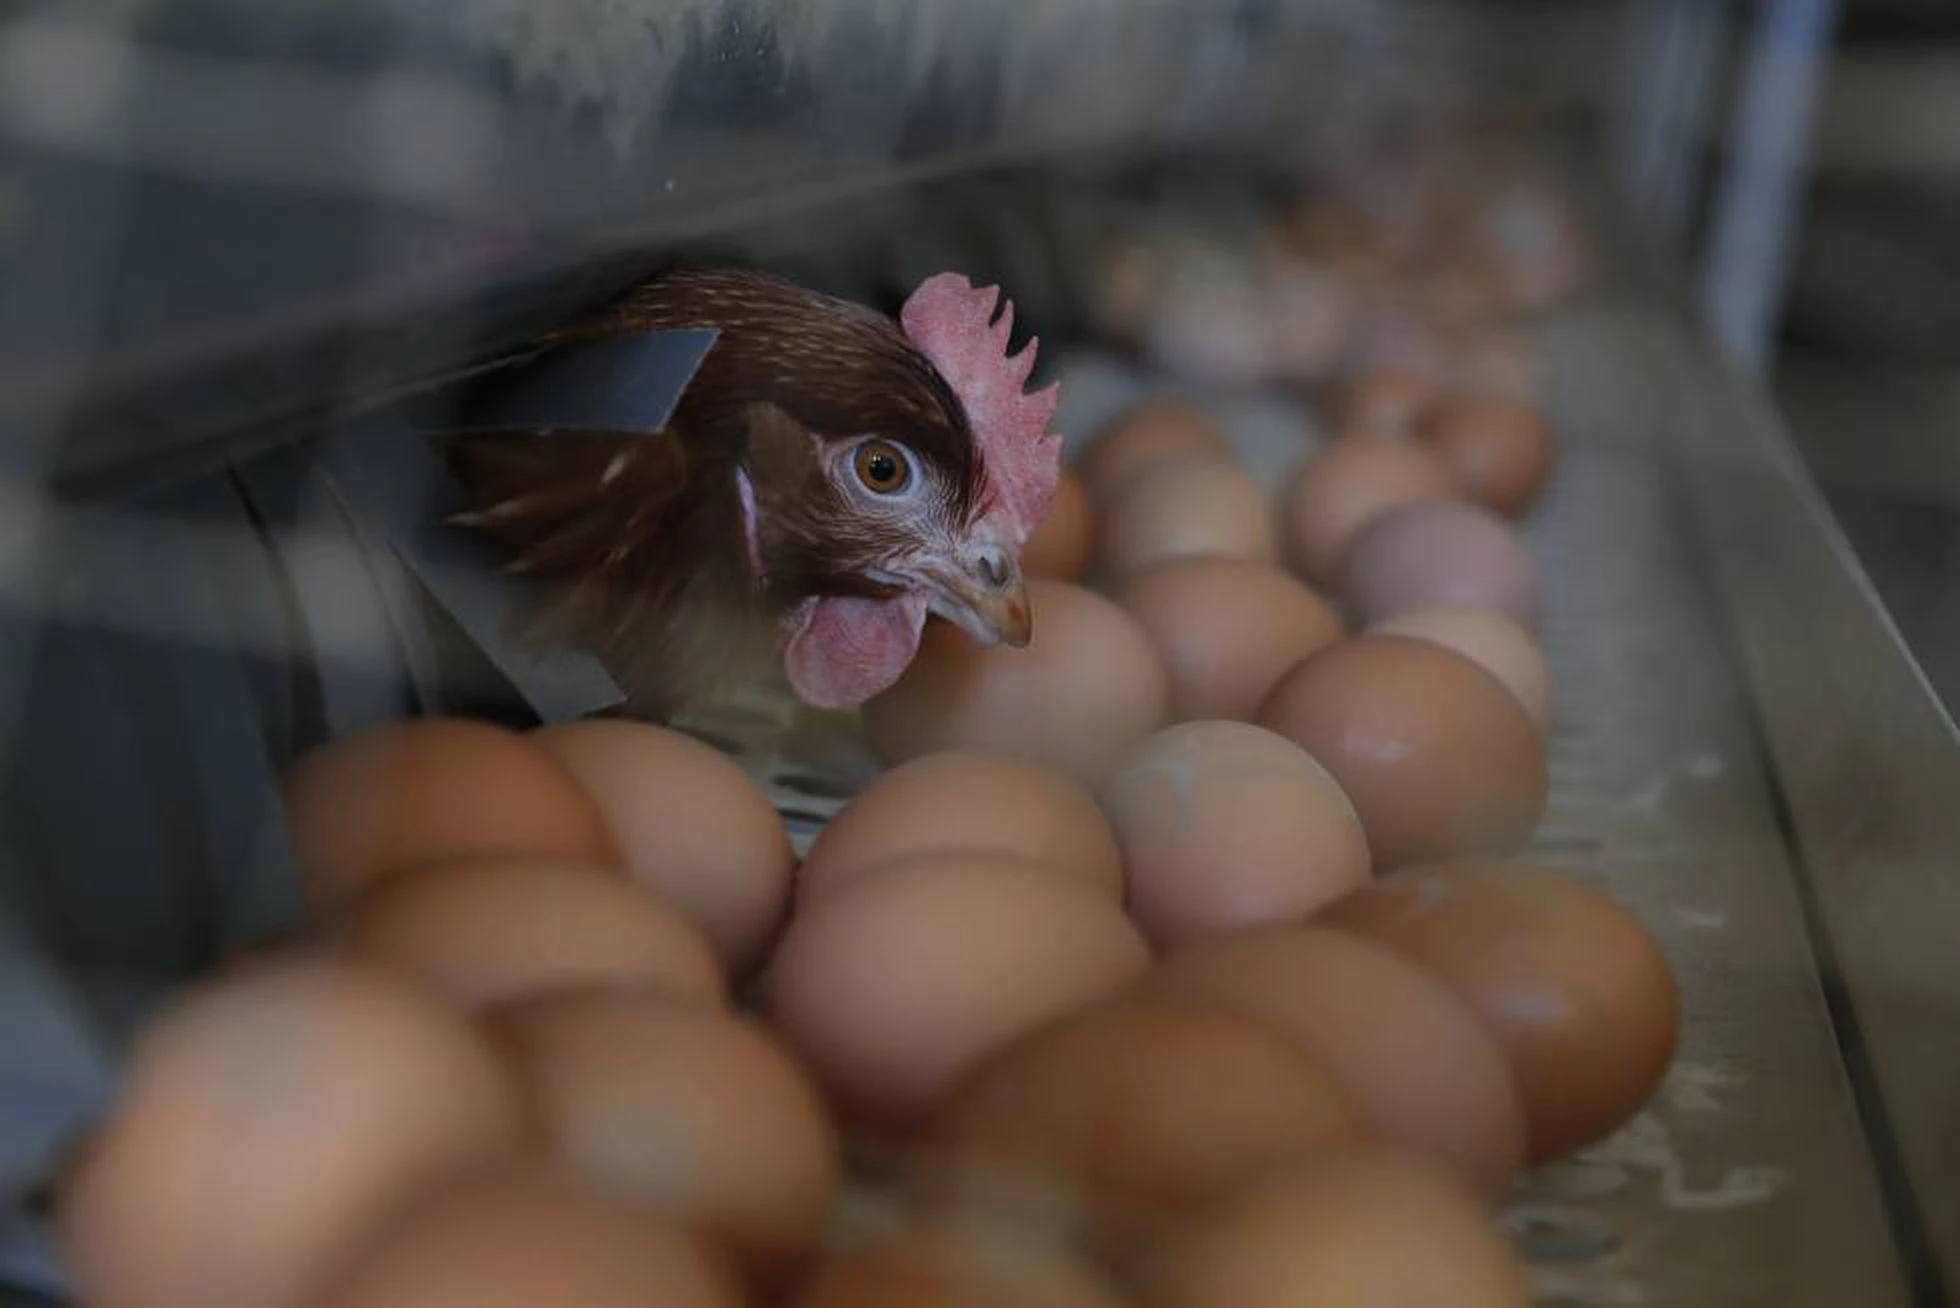 Repunte de COVID-19 acelera problema de mercado en producción de huevos